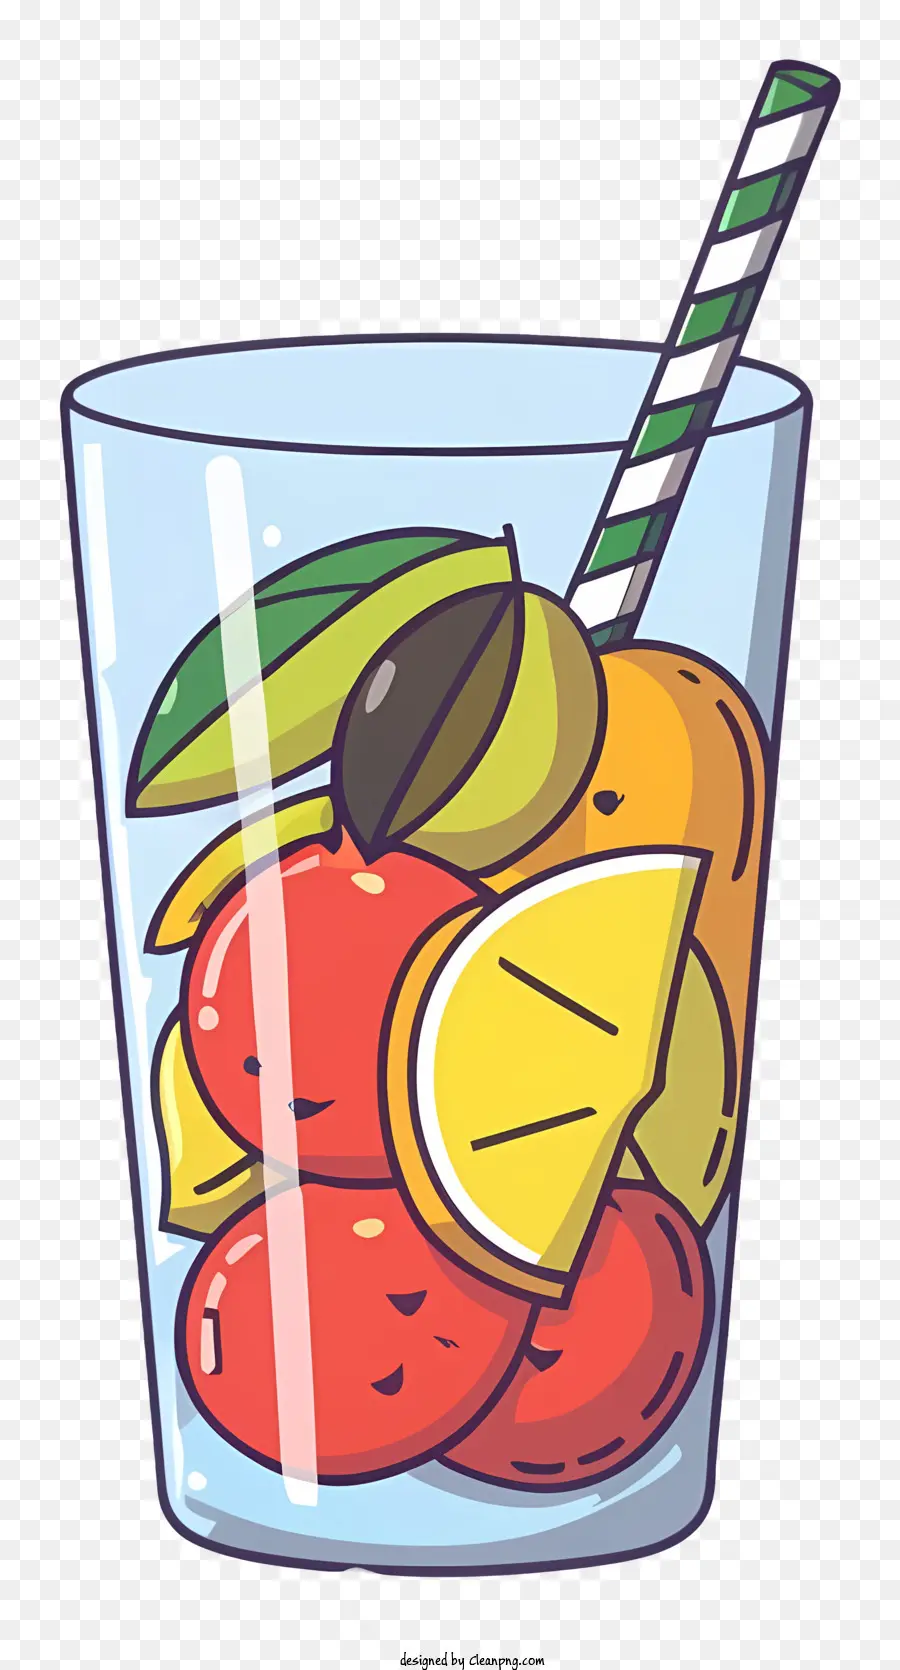 fruit cocktail glass of fruit citrus fruits summer drinks fruity beverages